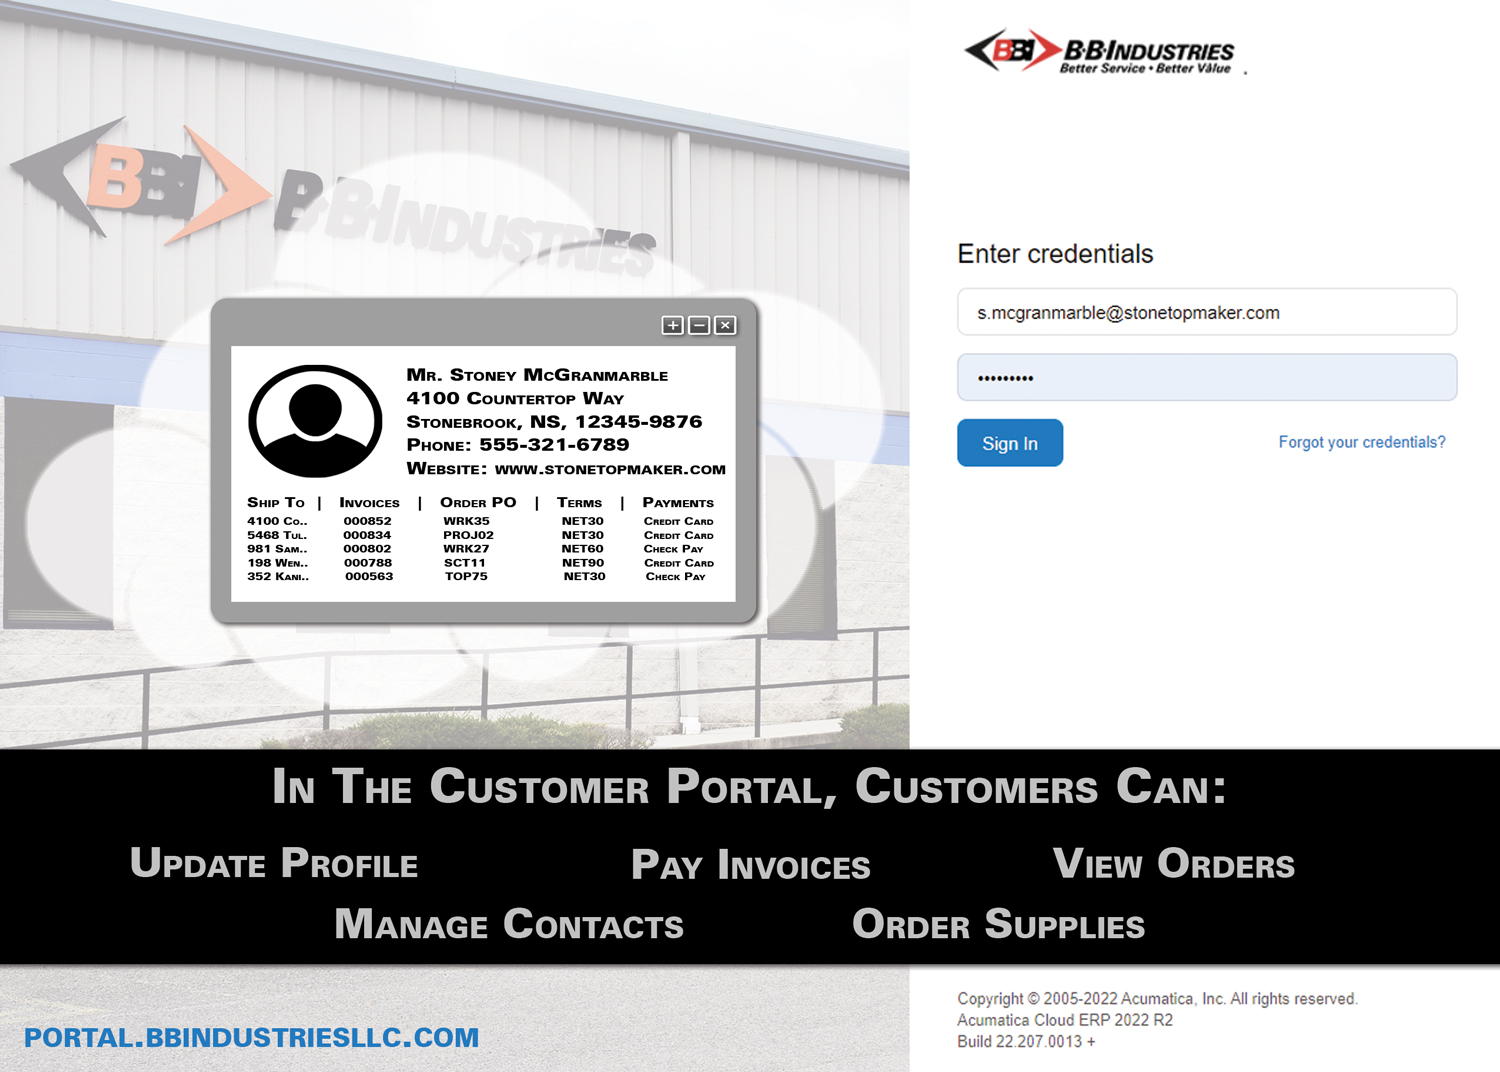 BBI's Customer Portal Access Gateway